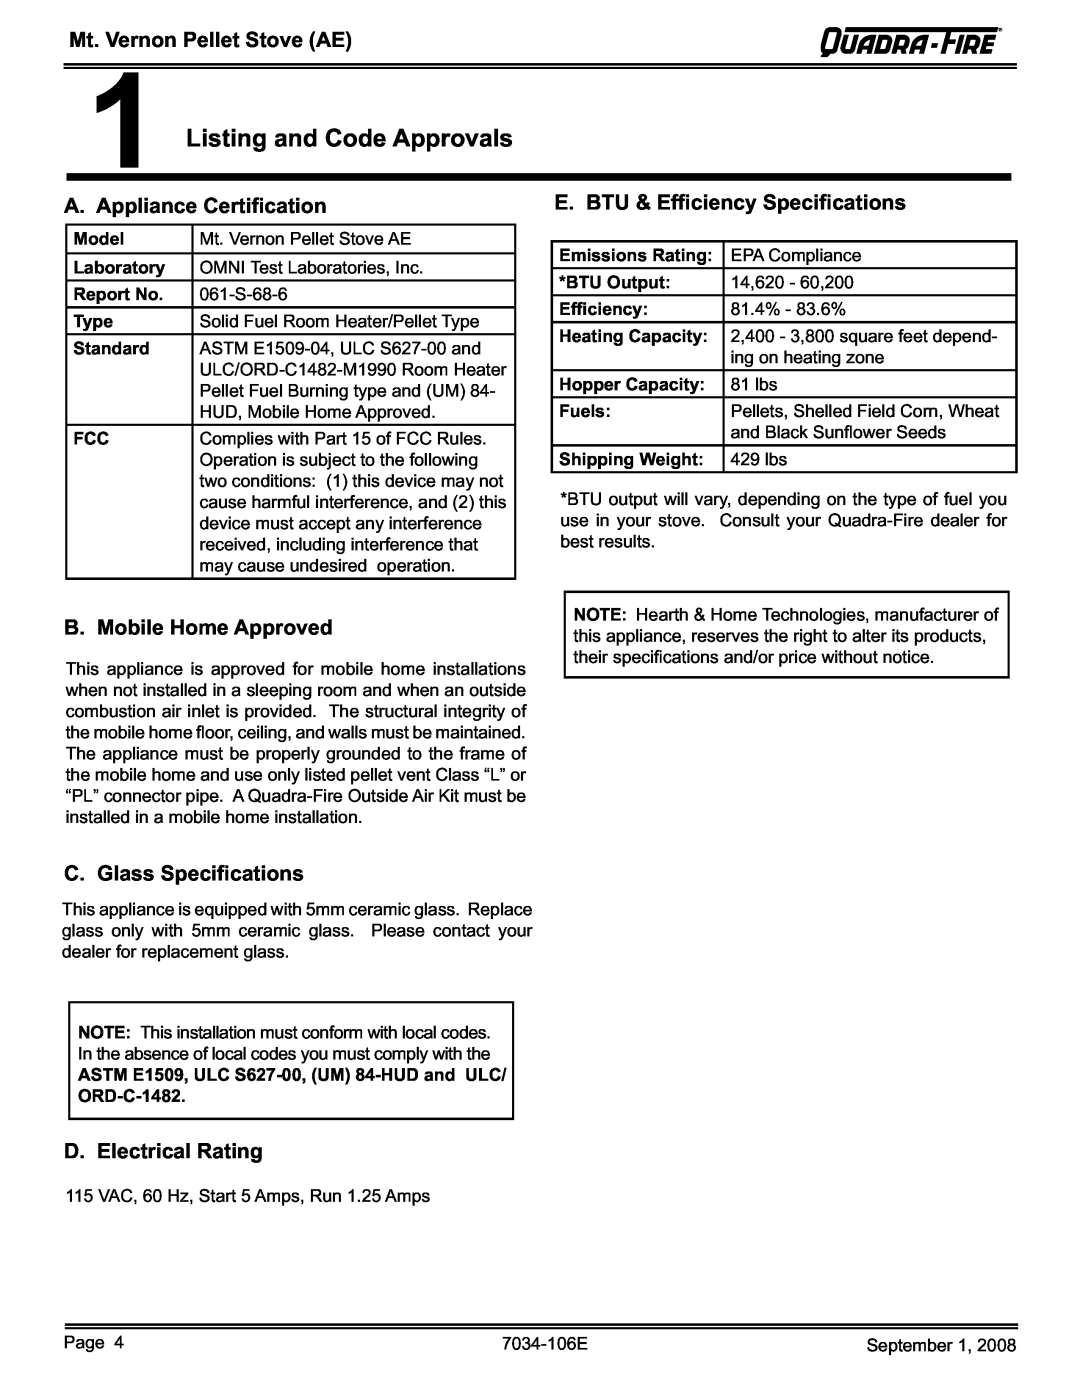 Quadra-Fire MTVERNON-AE-PMH Listing and Code Approvals, A. Appliance Certiﬁcation, E. BTU & Efﬁciency Speciﬁcations 